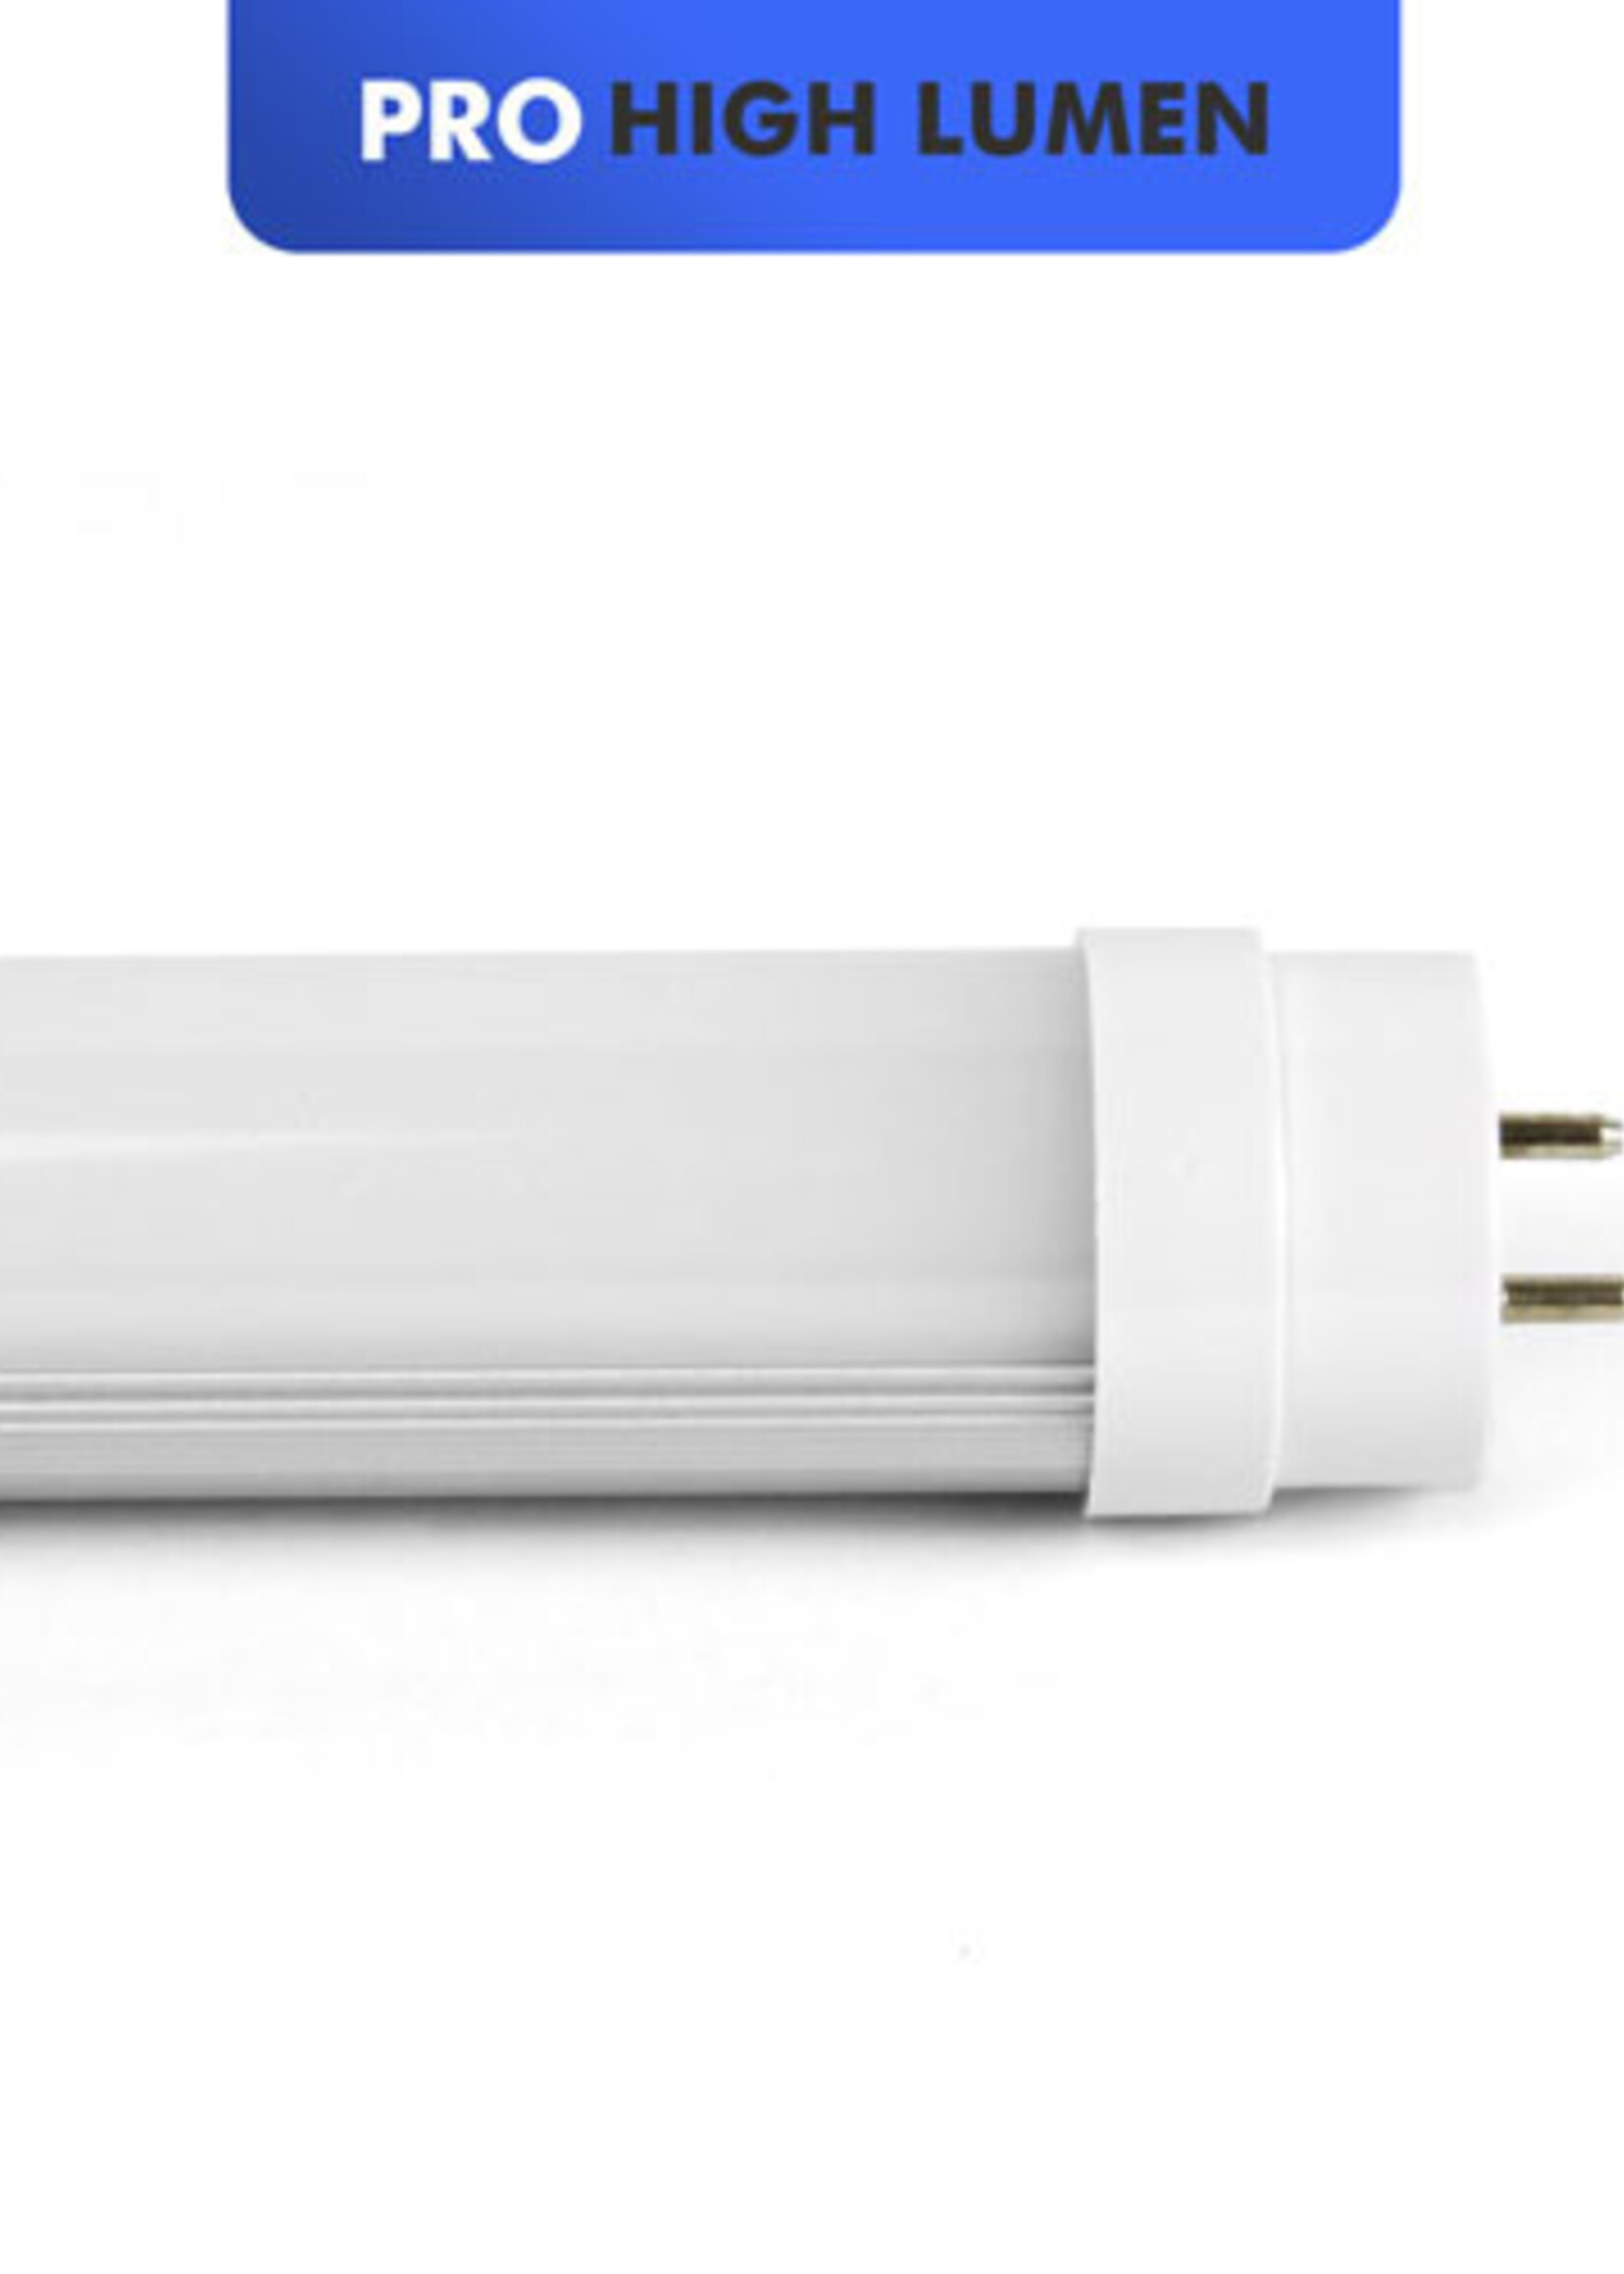 LEDWINKEL-Online LED TL Buis 150cm 25W 140lm/W - Pro High lumen